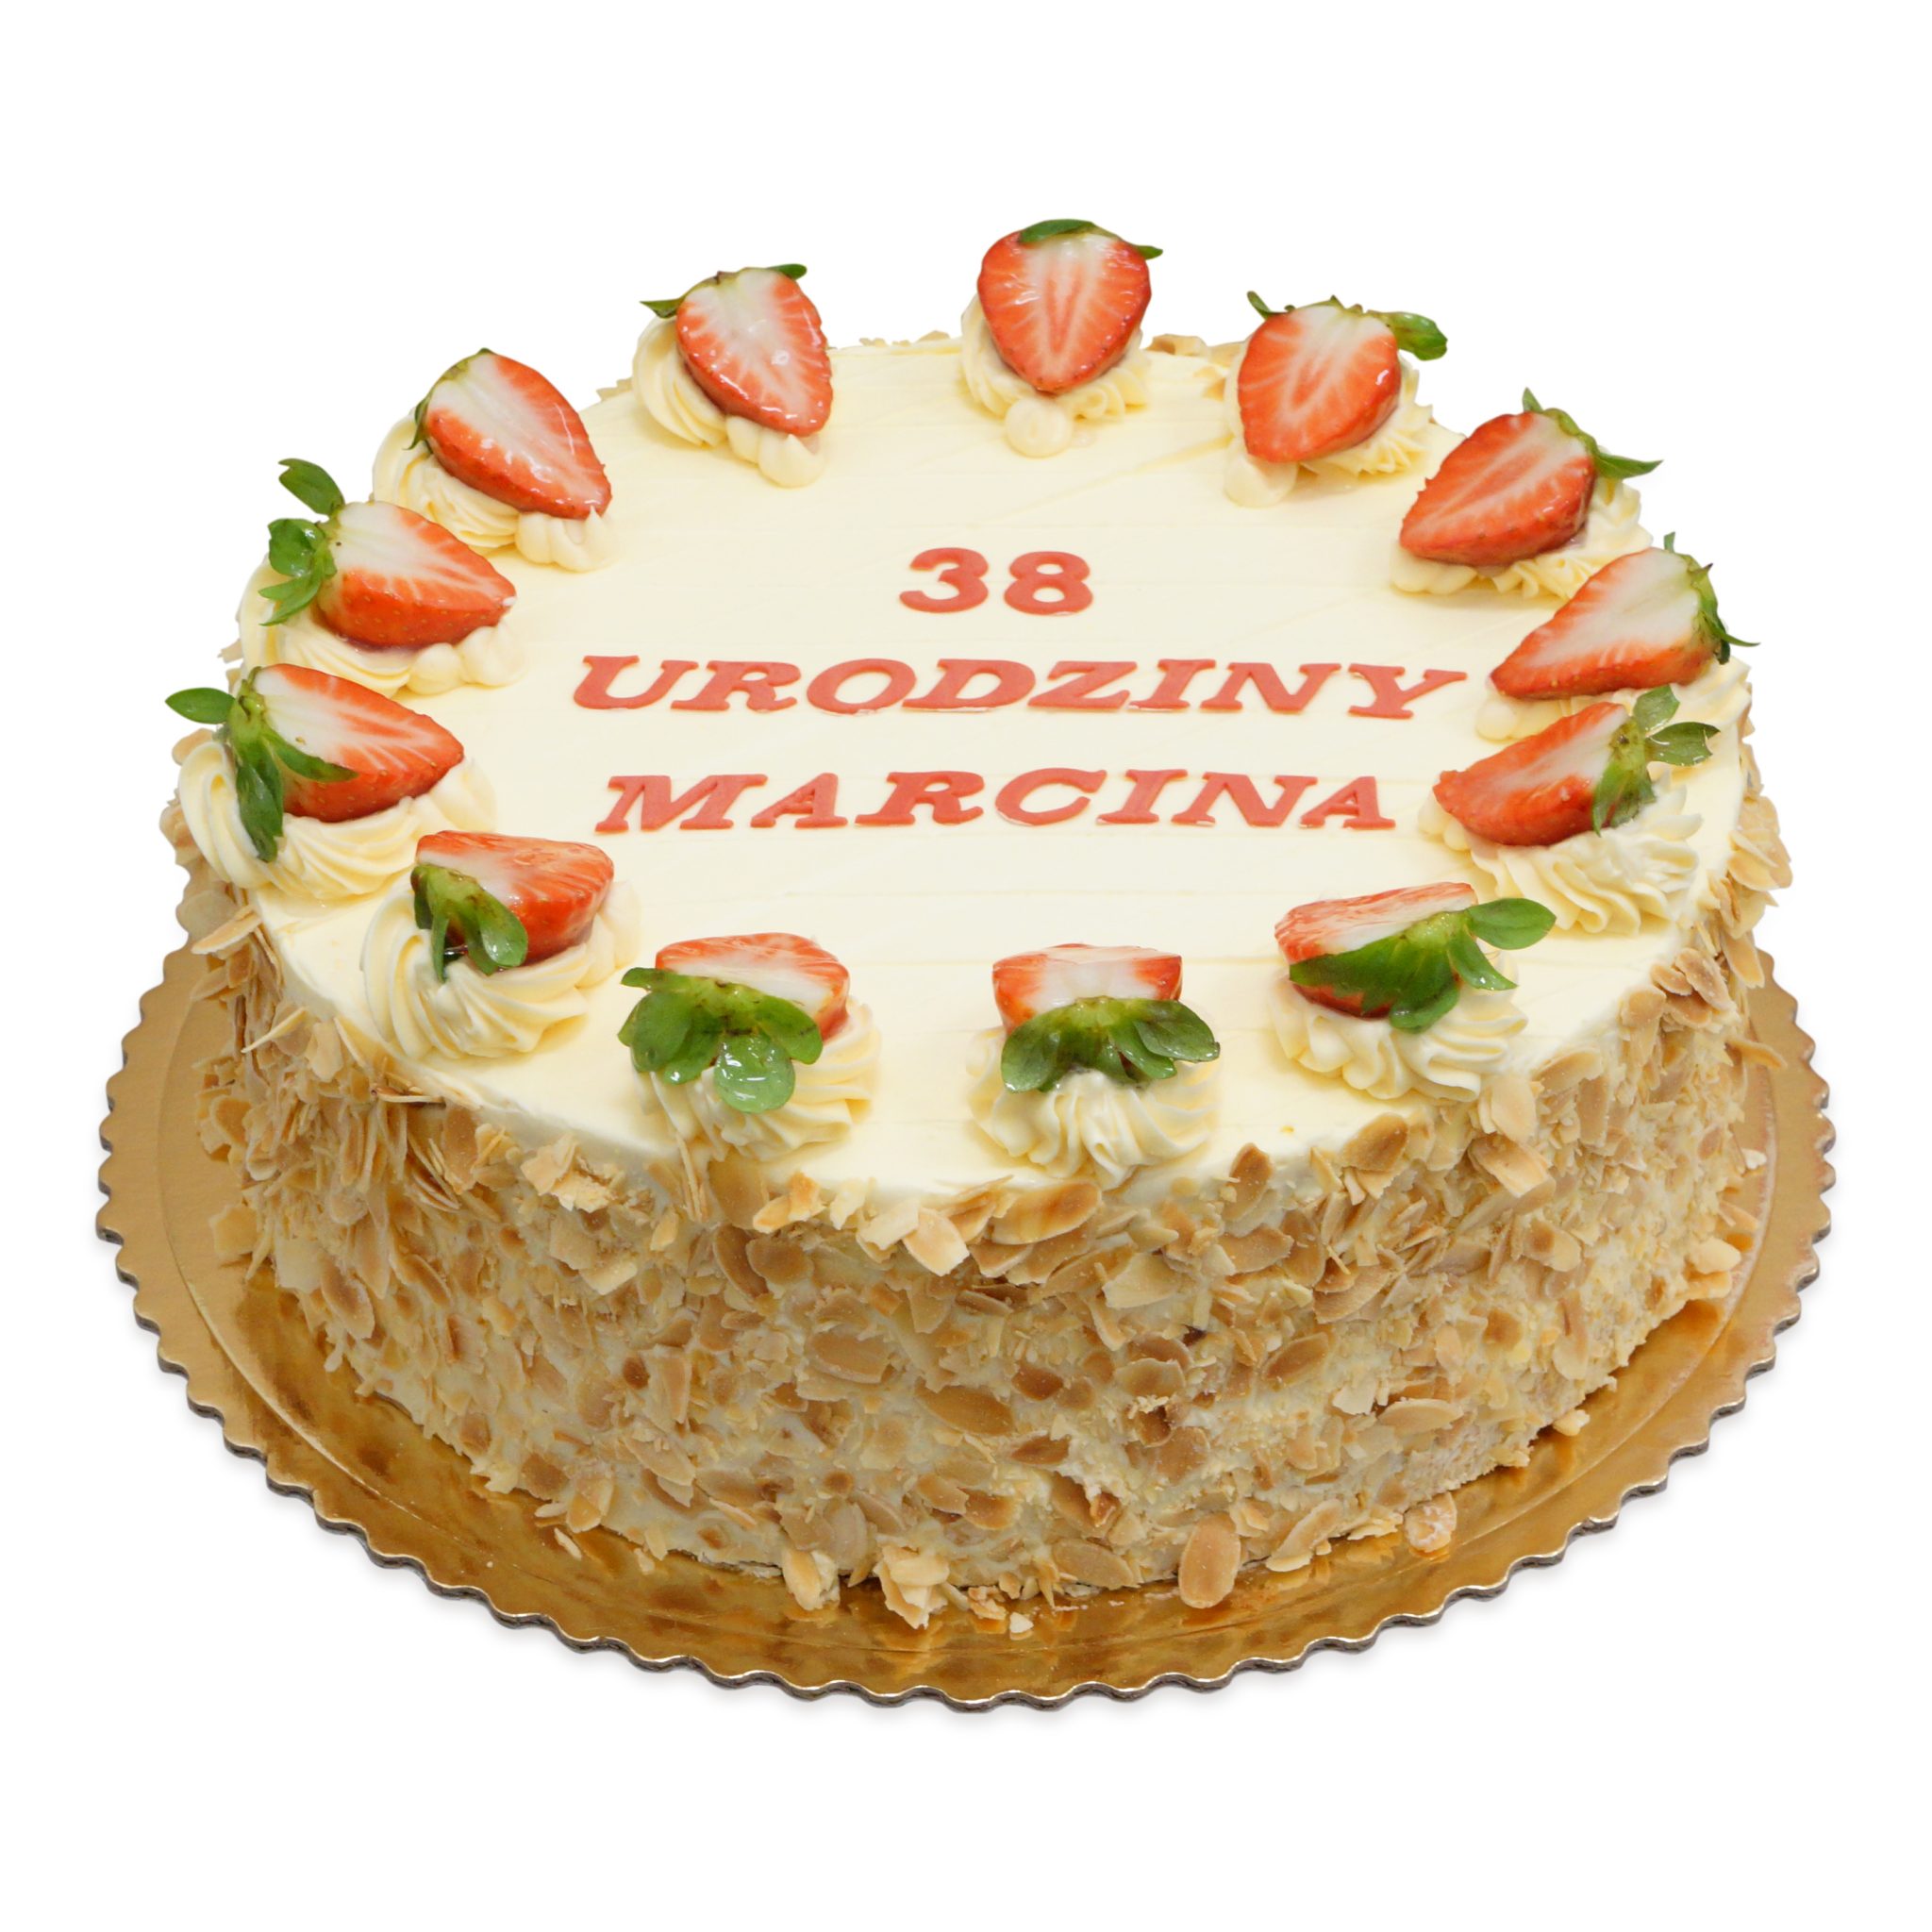 tort urodzinowy z napisami z masy cukrowej ostrów wielkopolski